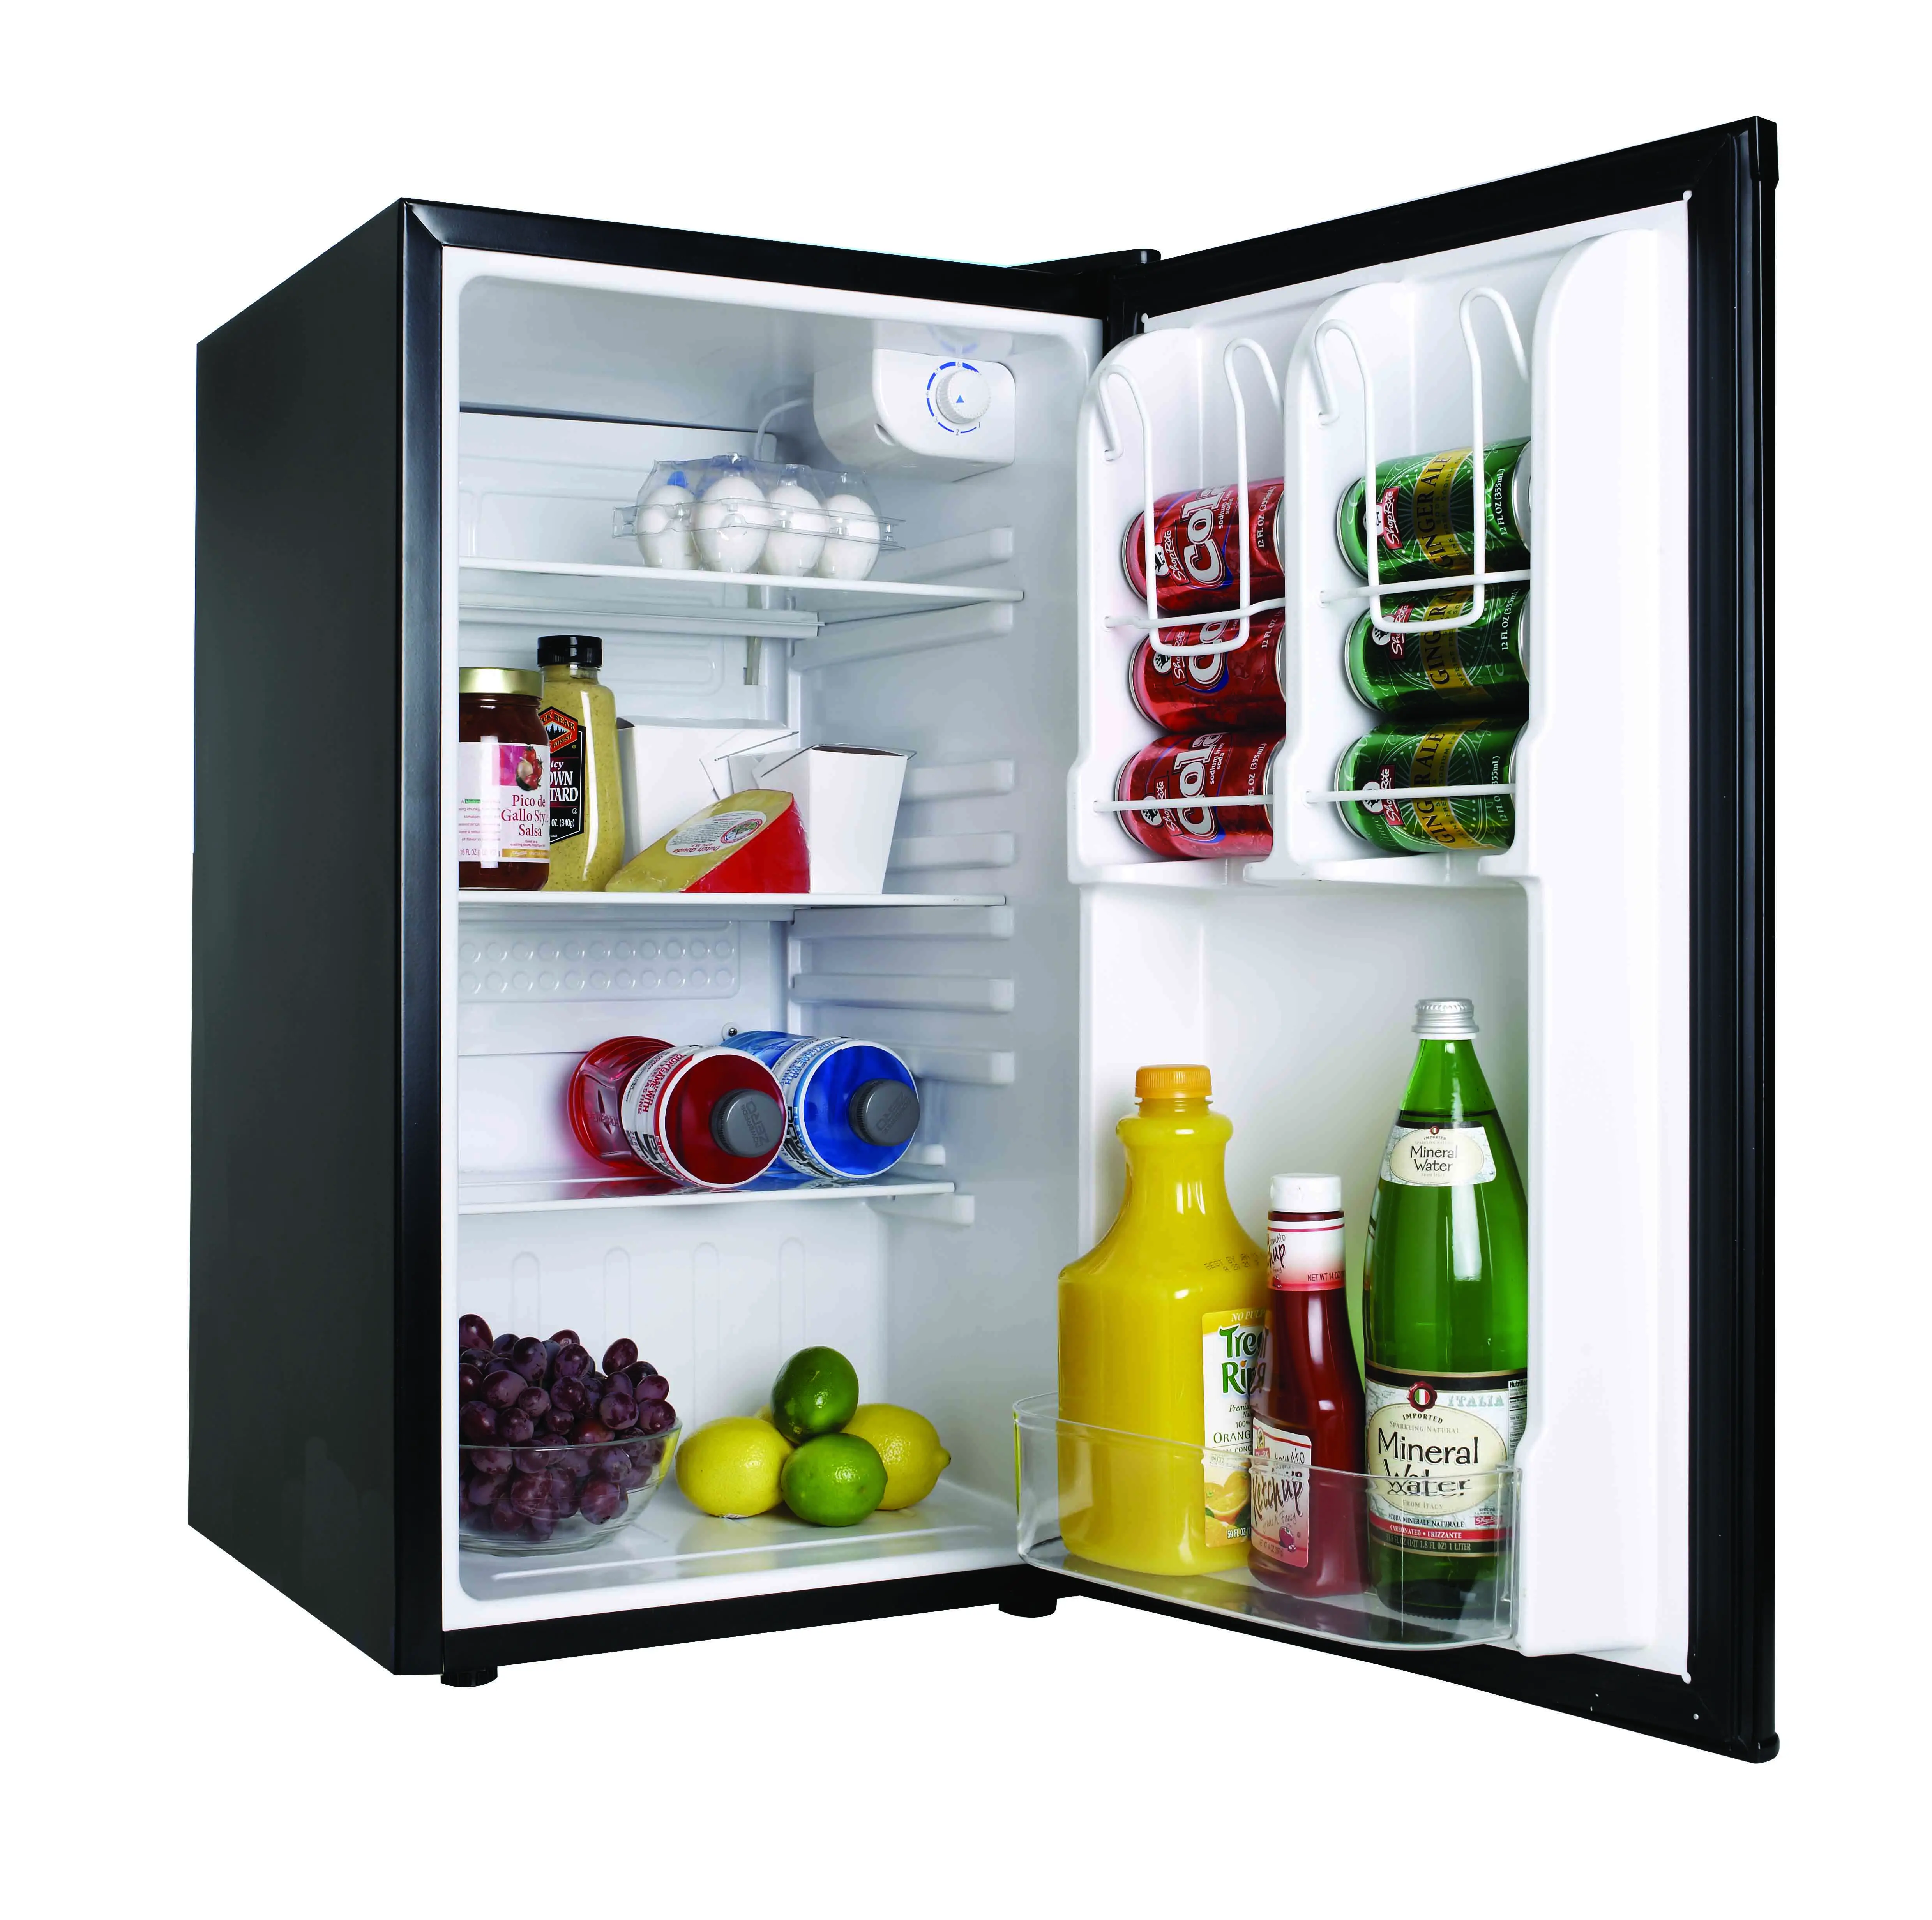 Купить маленький холодильник с морозильной камерой. Холодильник Freezer Refrigerator. Мини холодильник Хаер. Мини холодильник Haier. Мини холодильник Haier msr115.